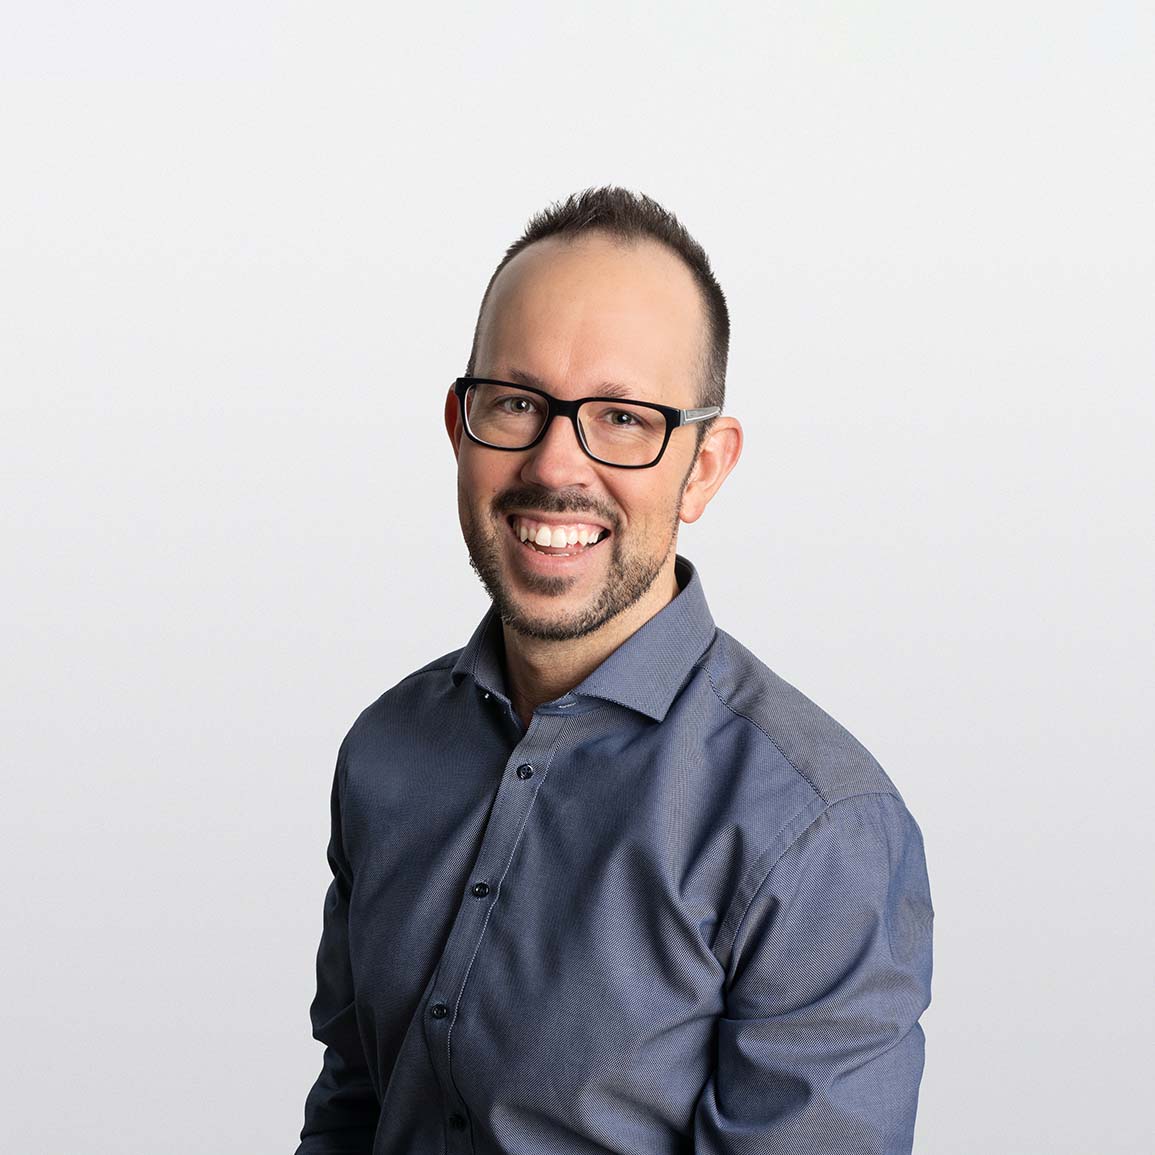 Image of Shane Schneider, Senior Financial Advisor, on white background